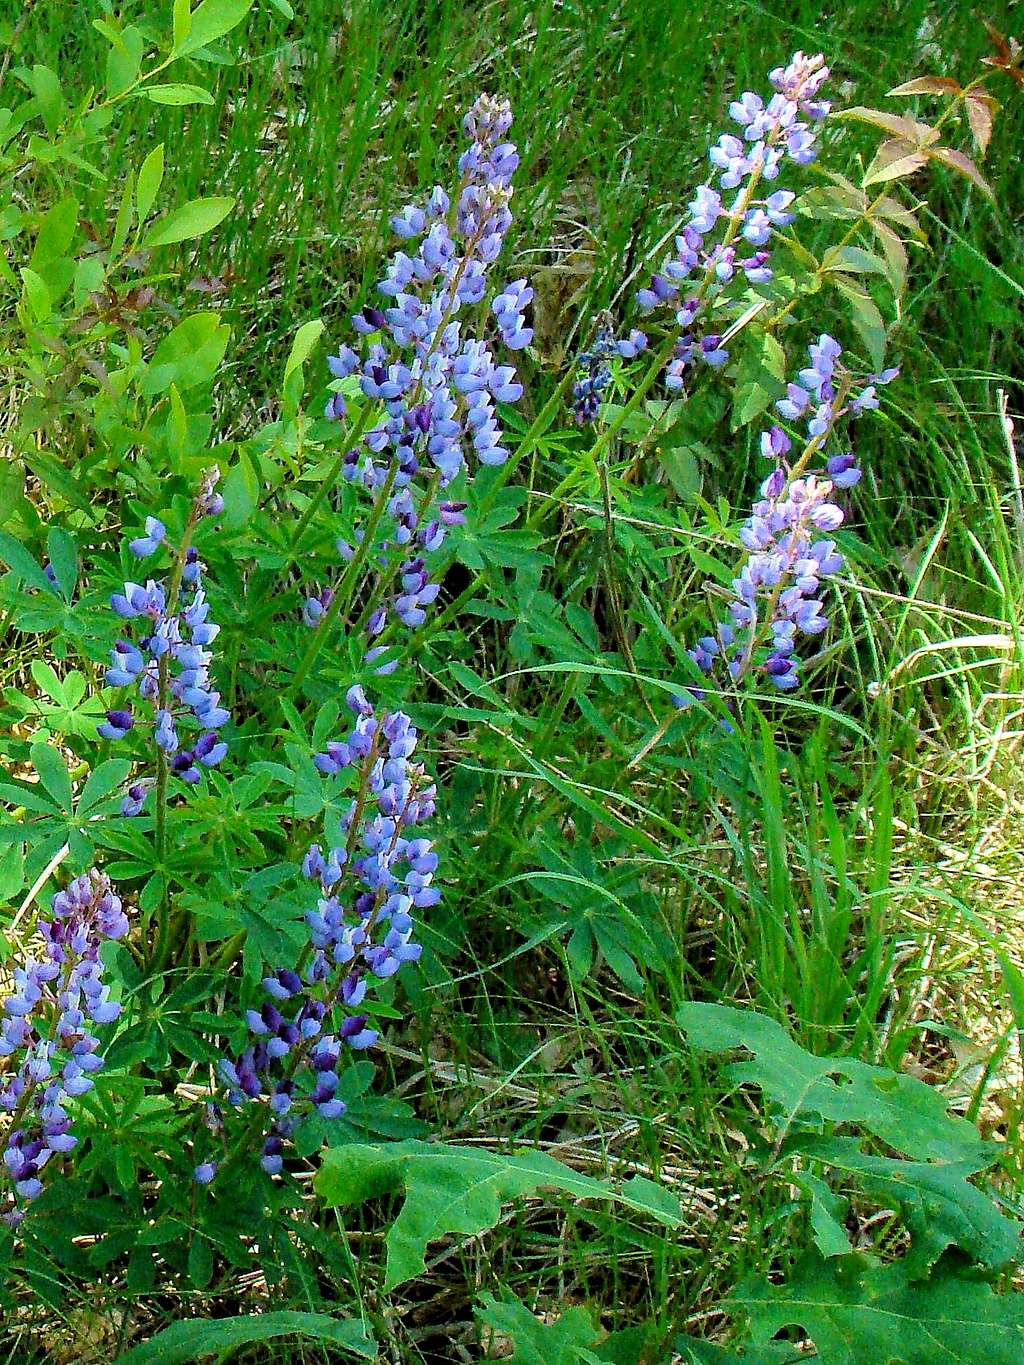 Levis Mound Wildflowers